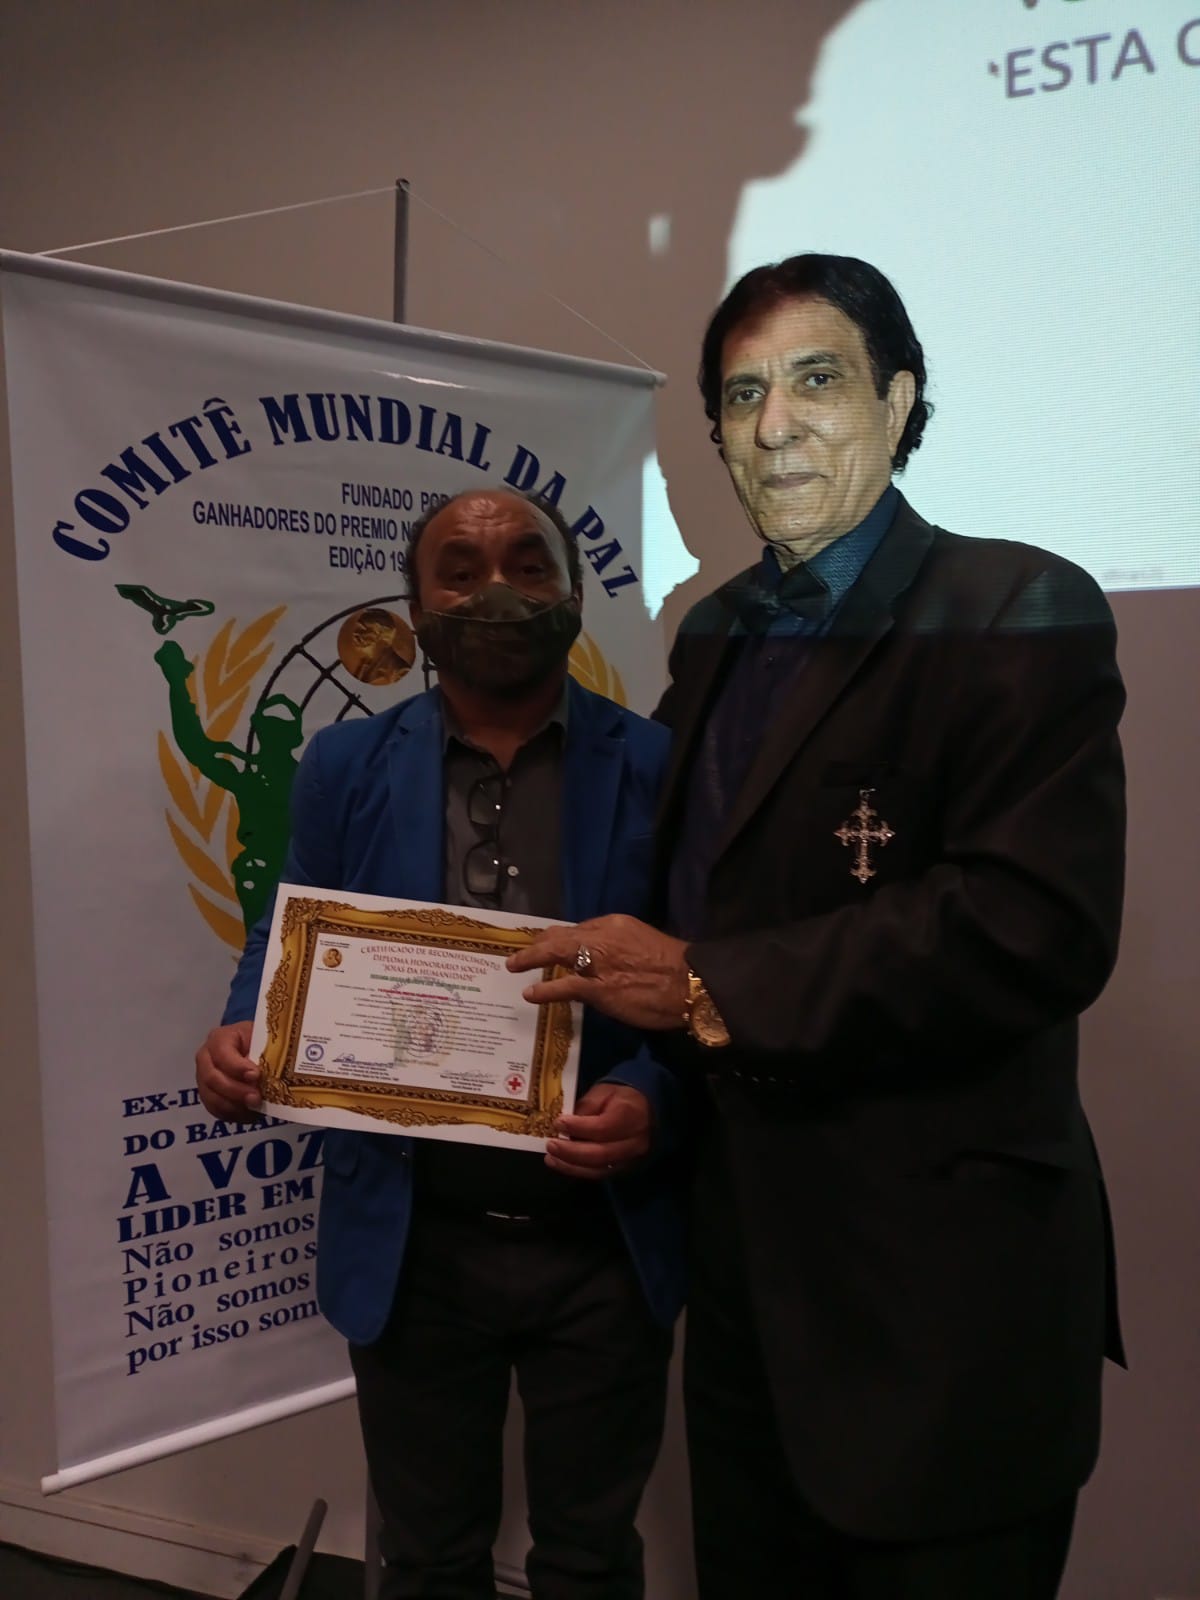 Prêmio Comenda do Mérito do Conselho e Comitê Mundial da Paz no Brasil. Em destaque aqui na Portfólio Vip